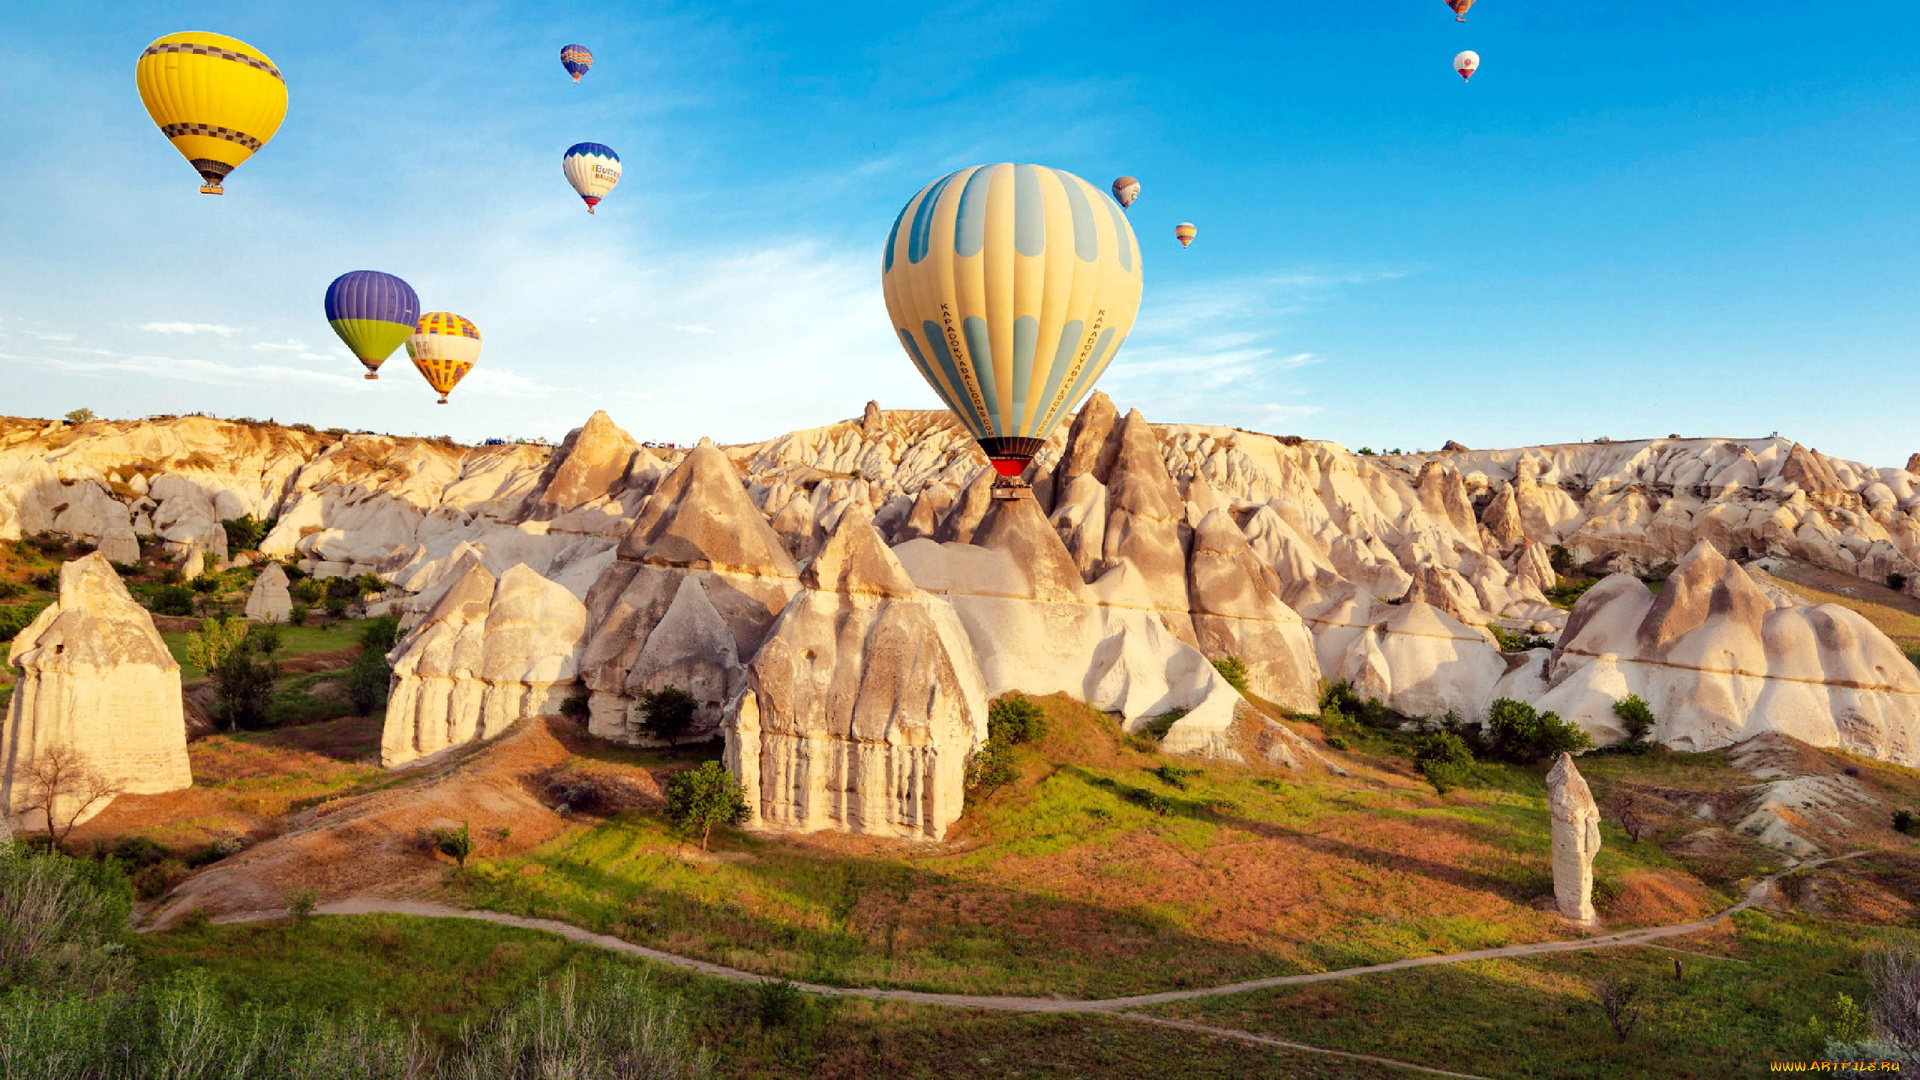 cappadocia, turkey, авиация, воздушные, шары, дирижабли